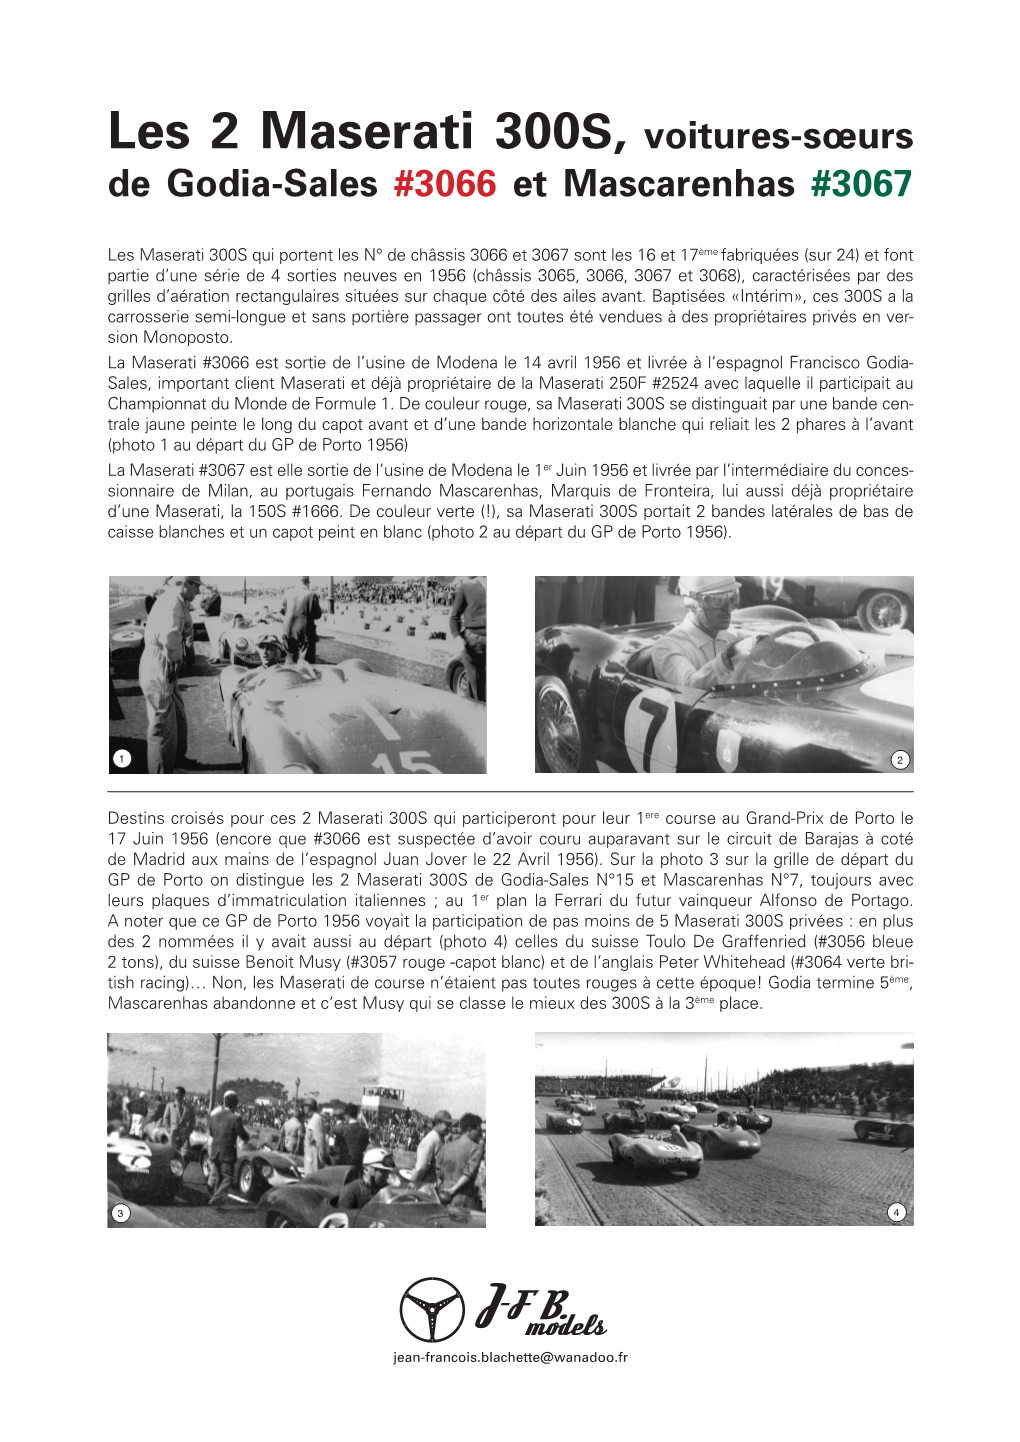 Les 2 Maserati 300S, Voitures-Sœurs De Godia-Sales #3066 Et Mascarenhas #3067